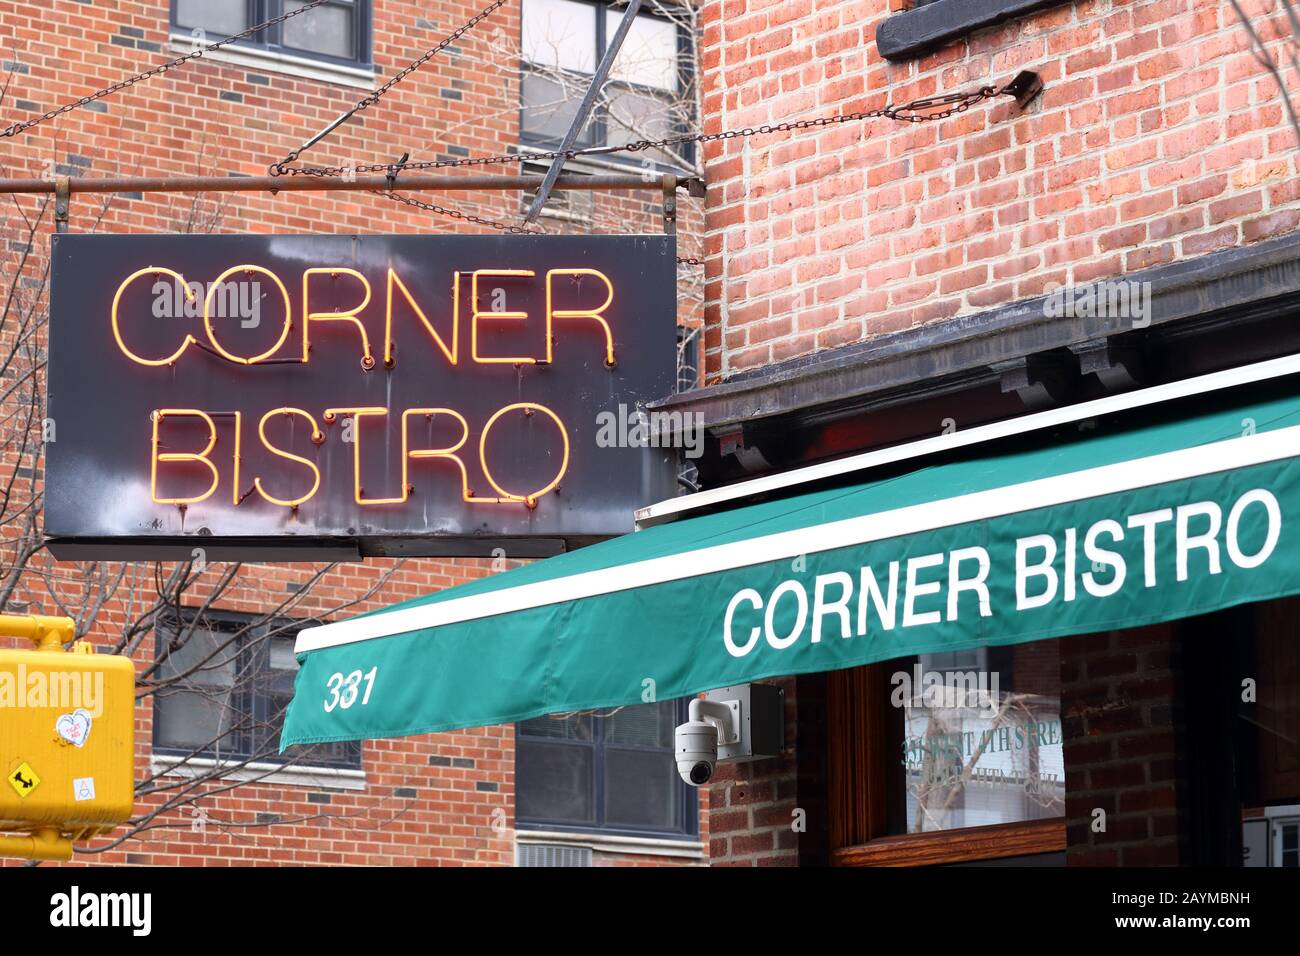 Corner Bistro, 331 West 4th Street, New York, New York, Außenansicht eines Pubs, das für seine Hamburger im Greenwich Village in Manhattan berühmt ist Stockfoto